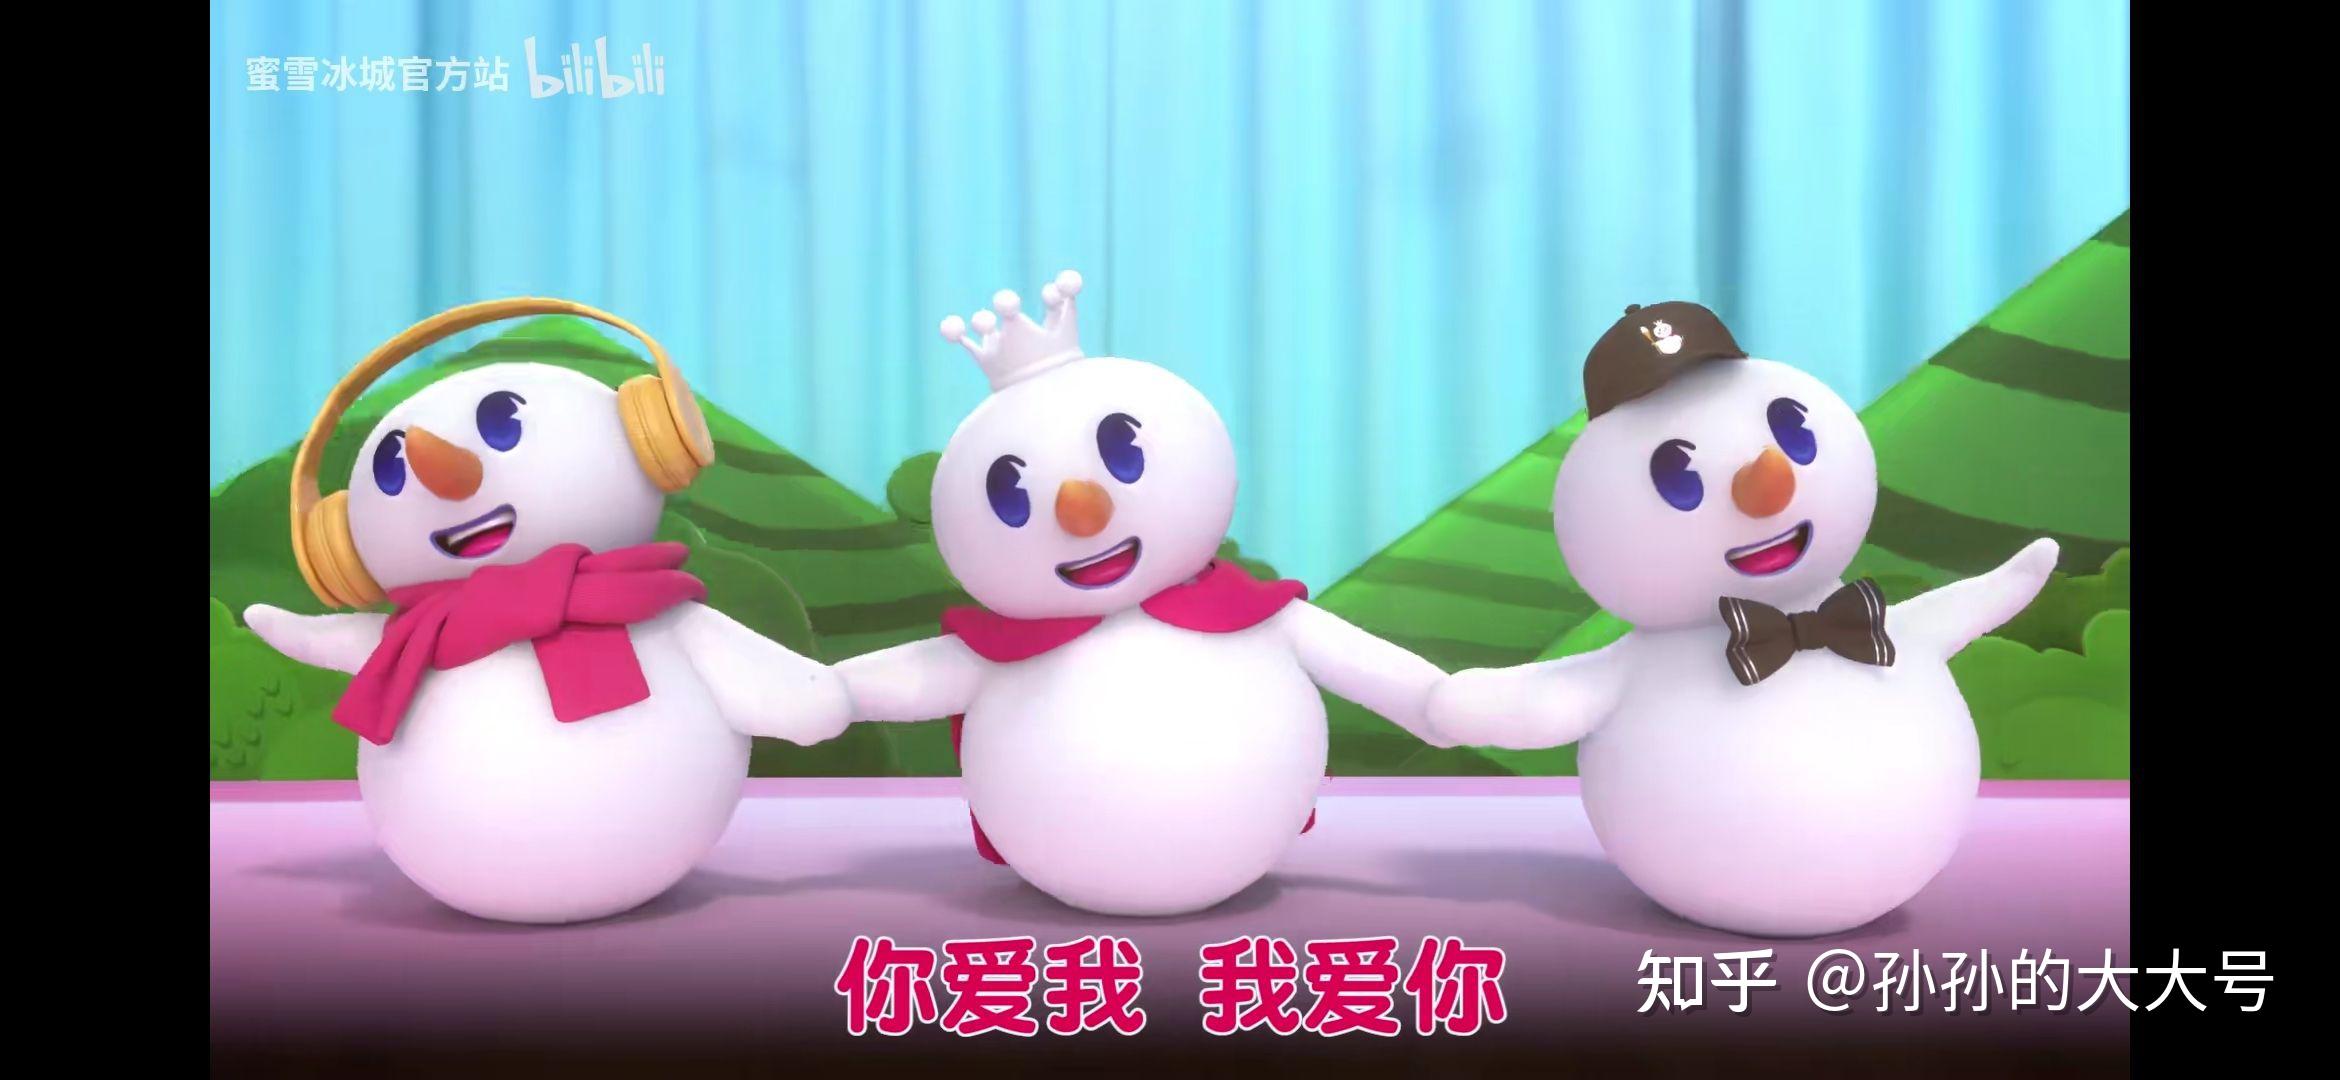 蜜雪冰城动画 mv 中出现的三个雪人是不是有不同的